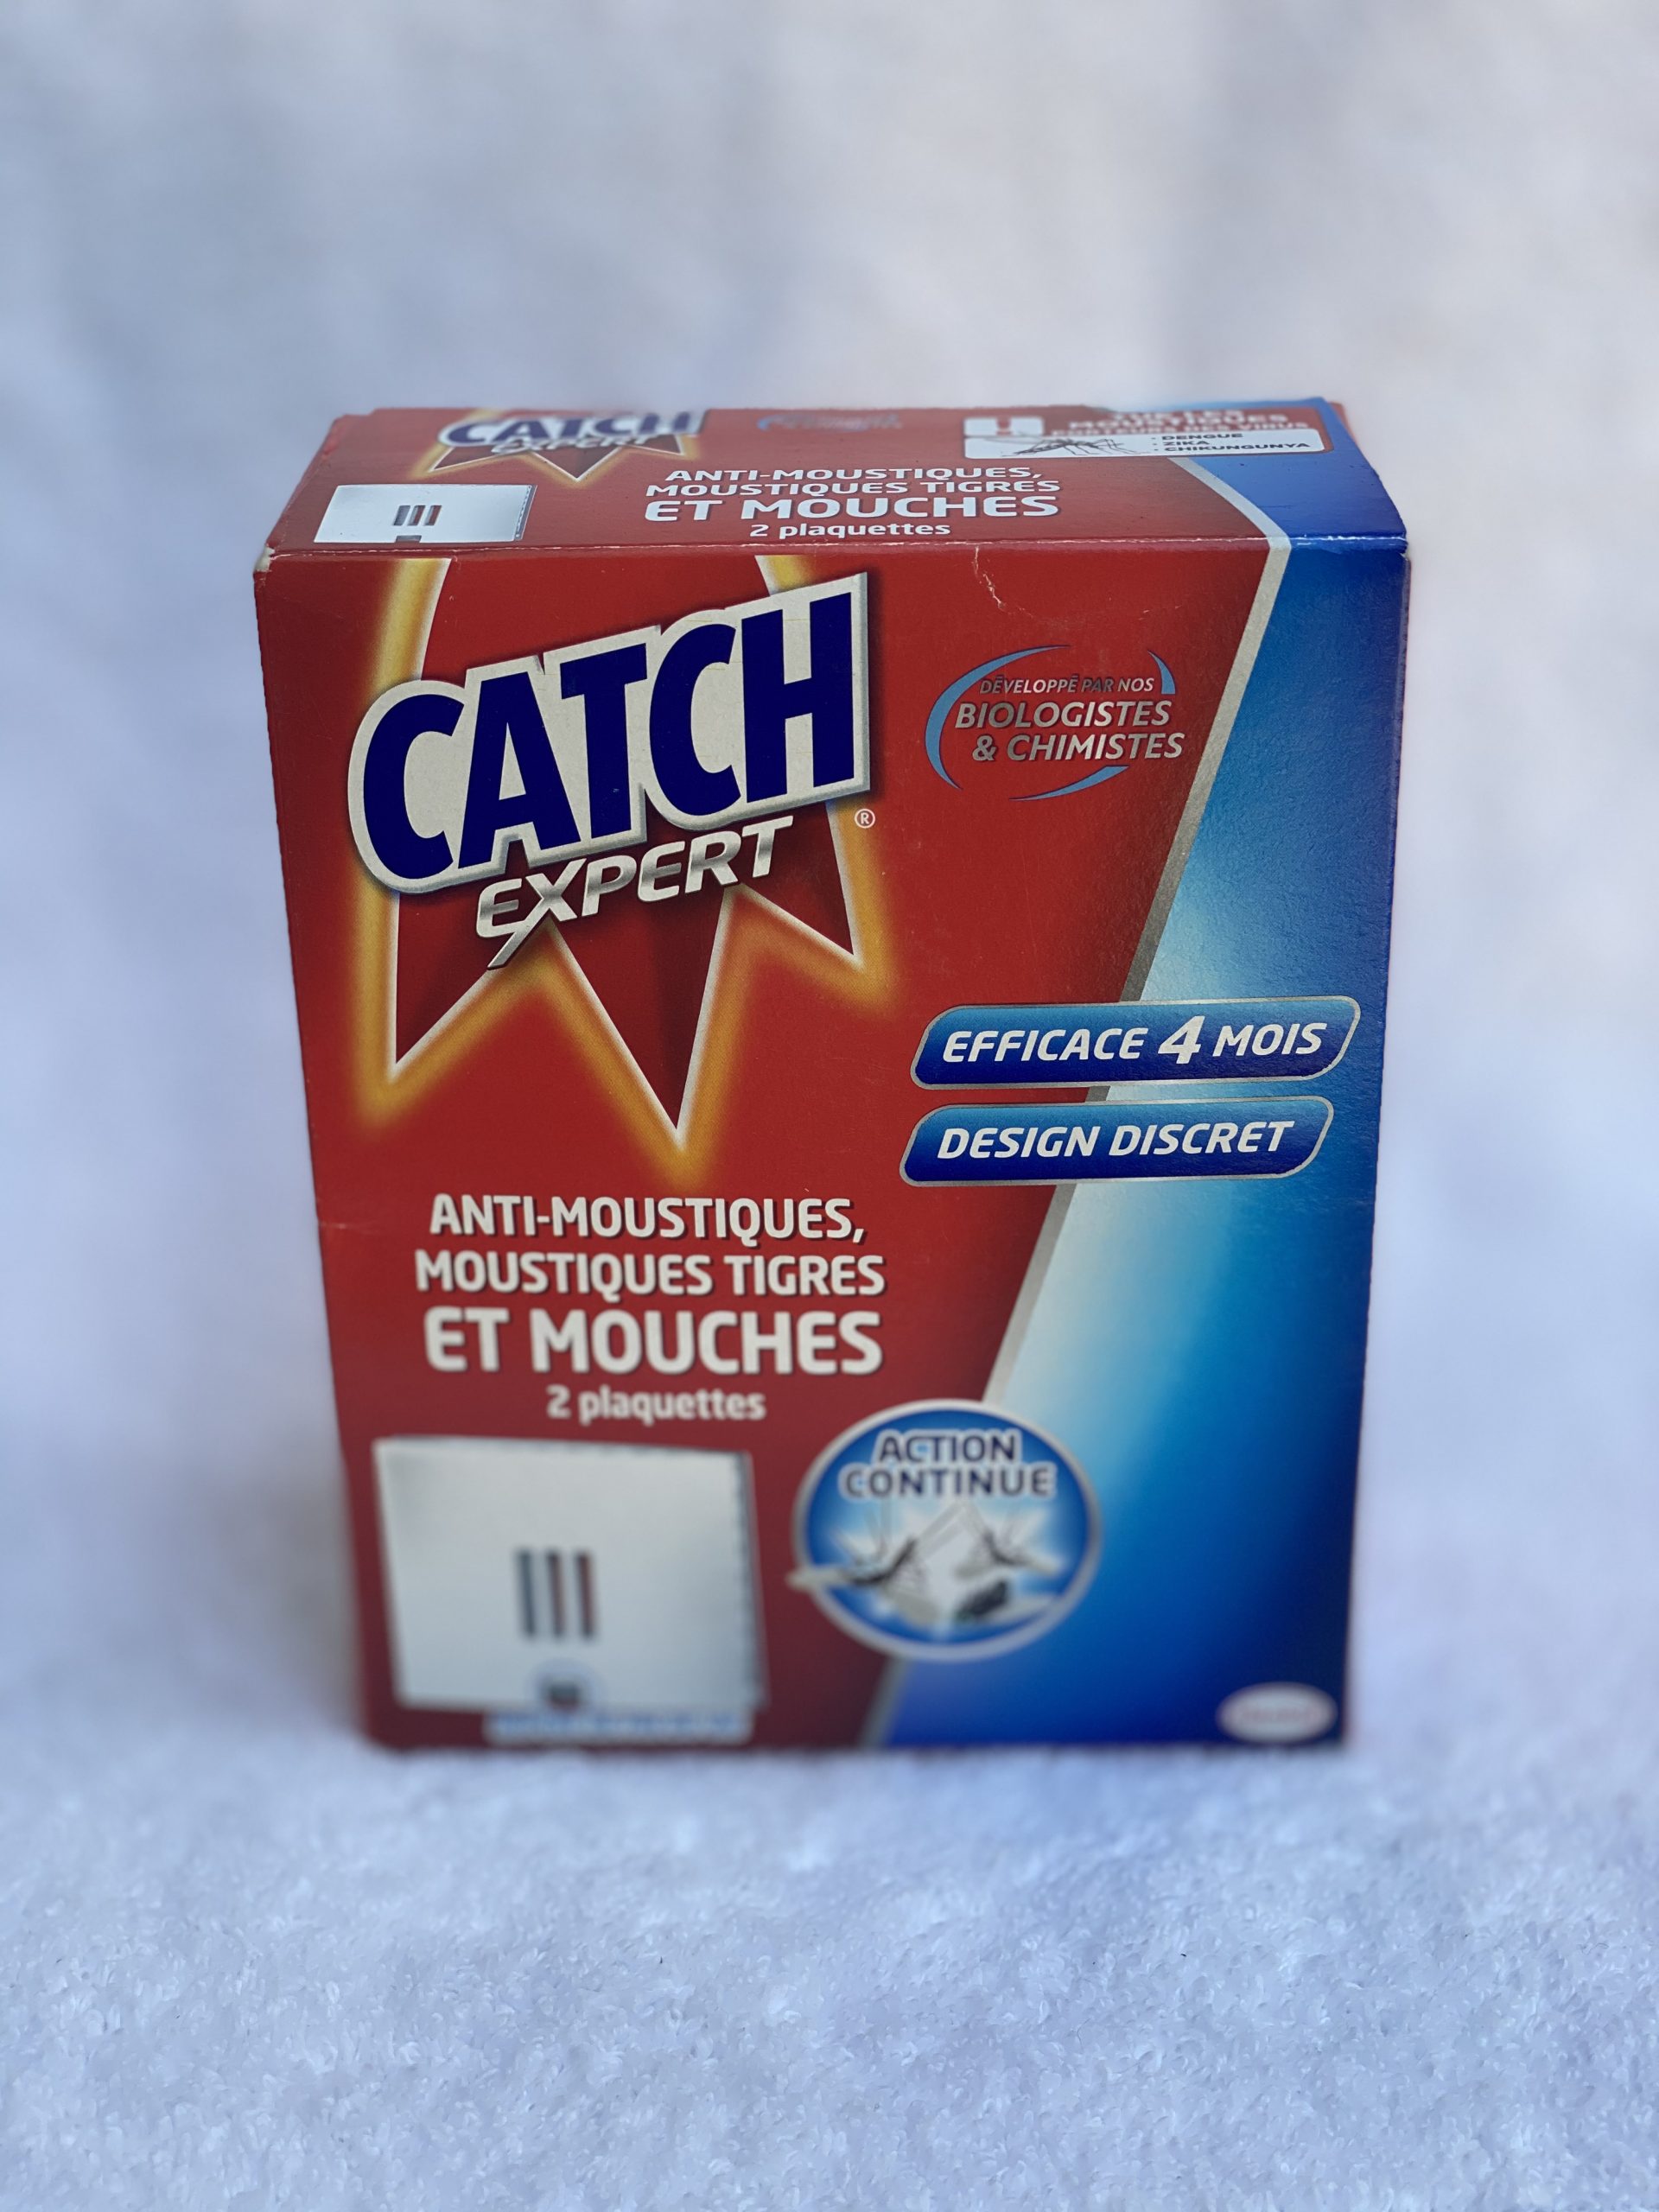 Catch Expert Mouche & Moustiques - Strass Destock